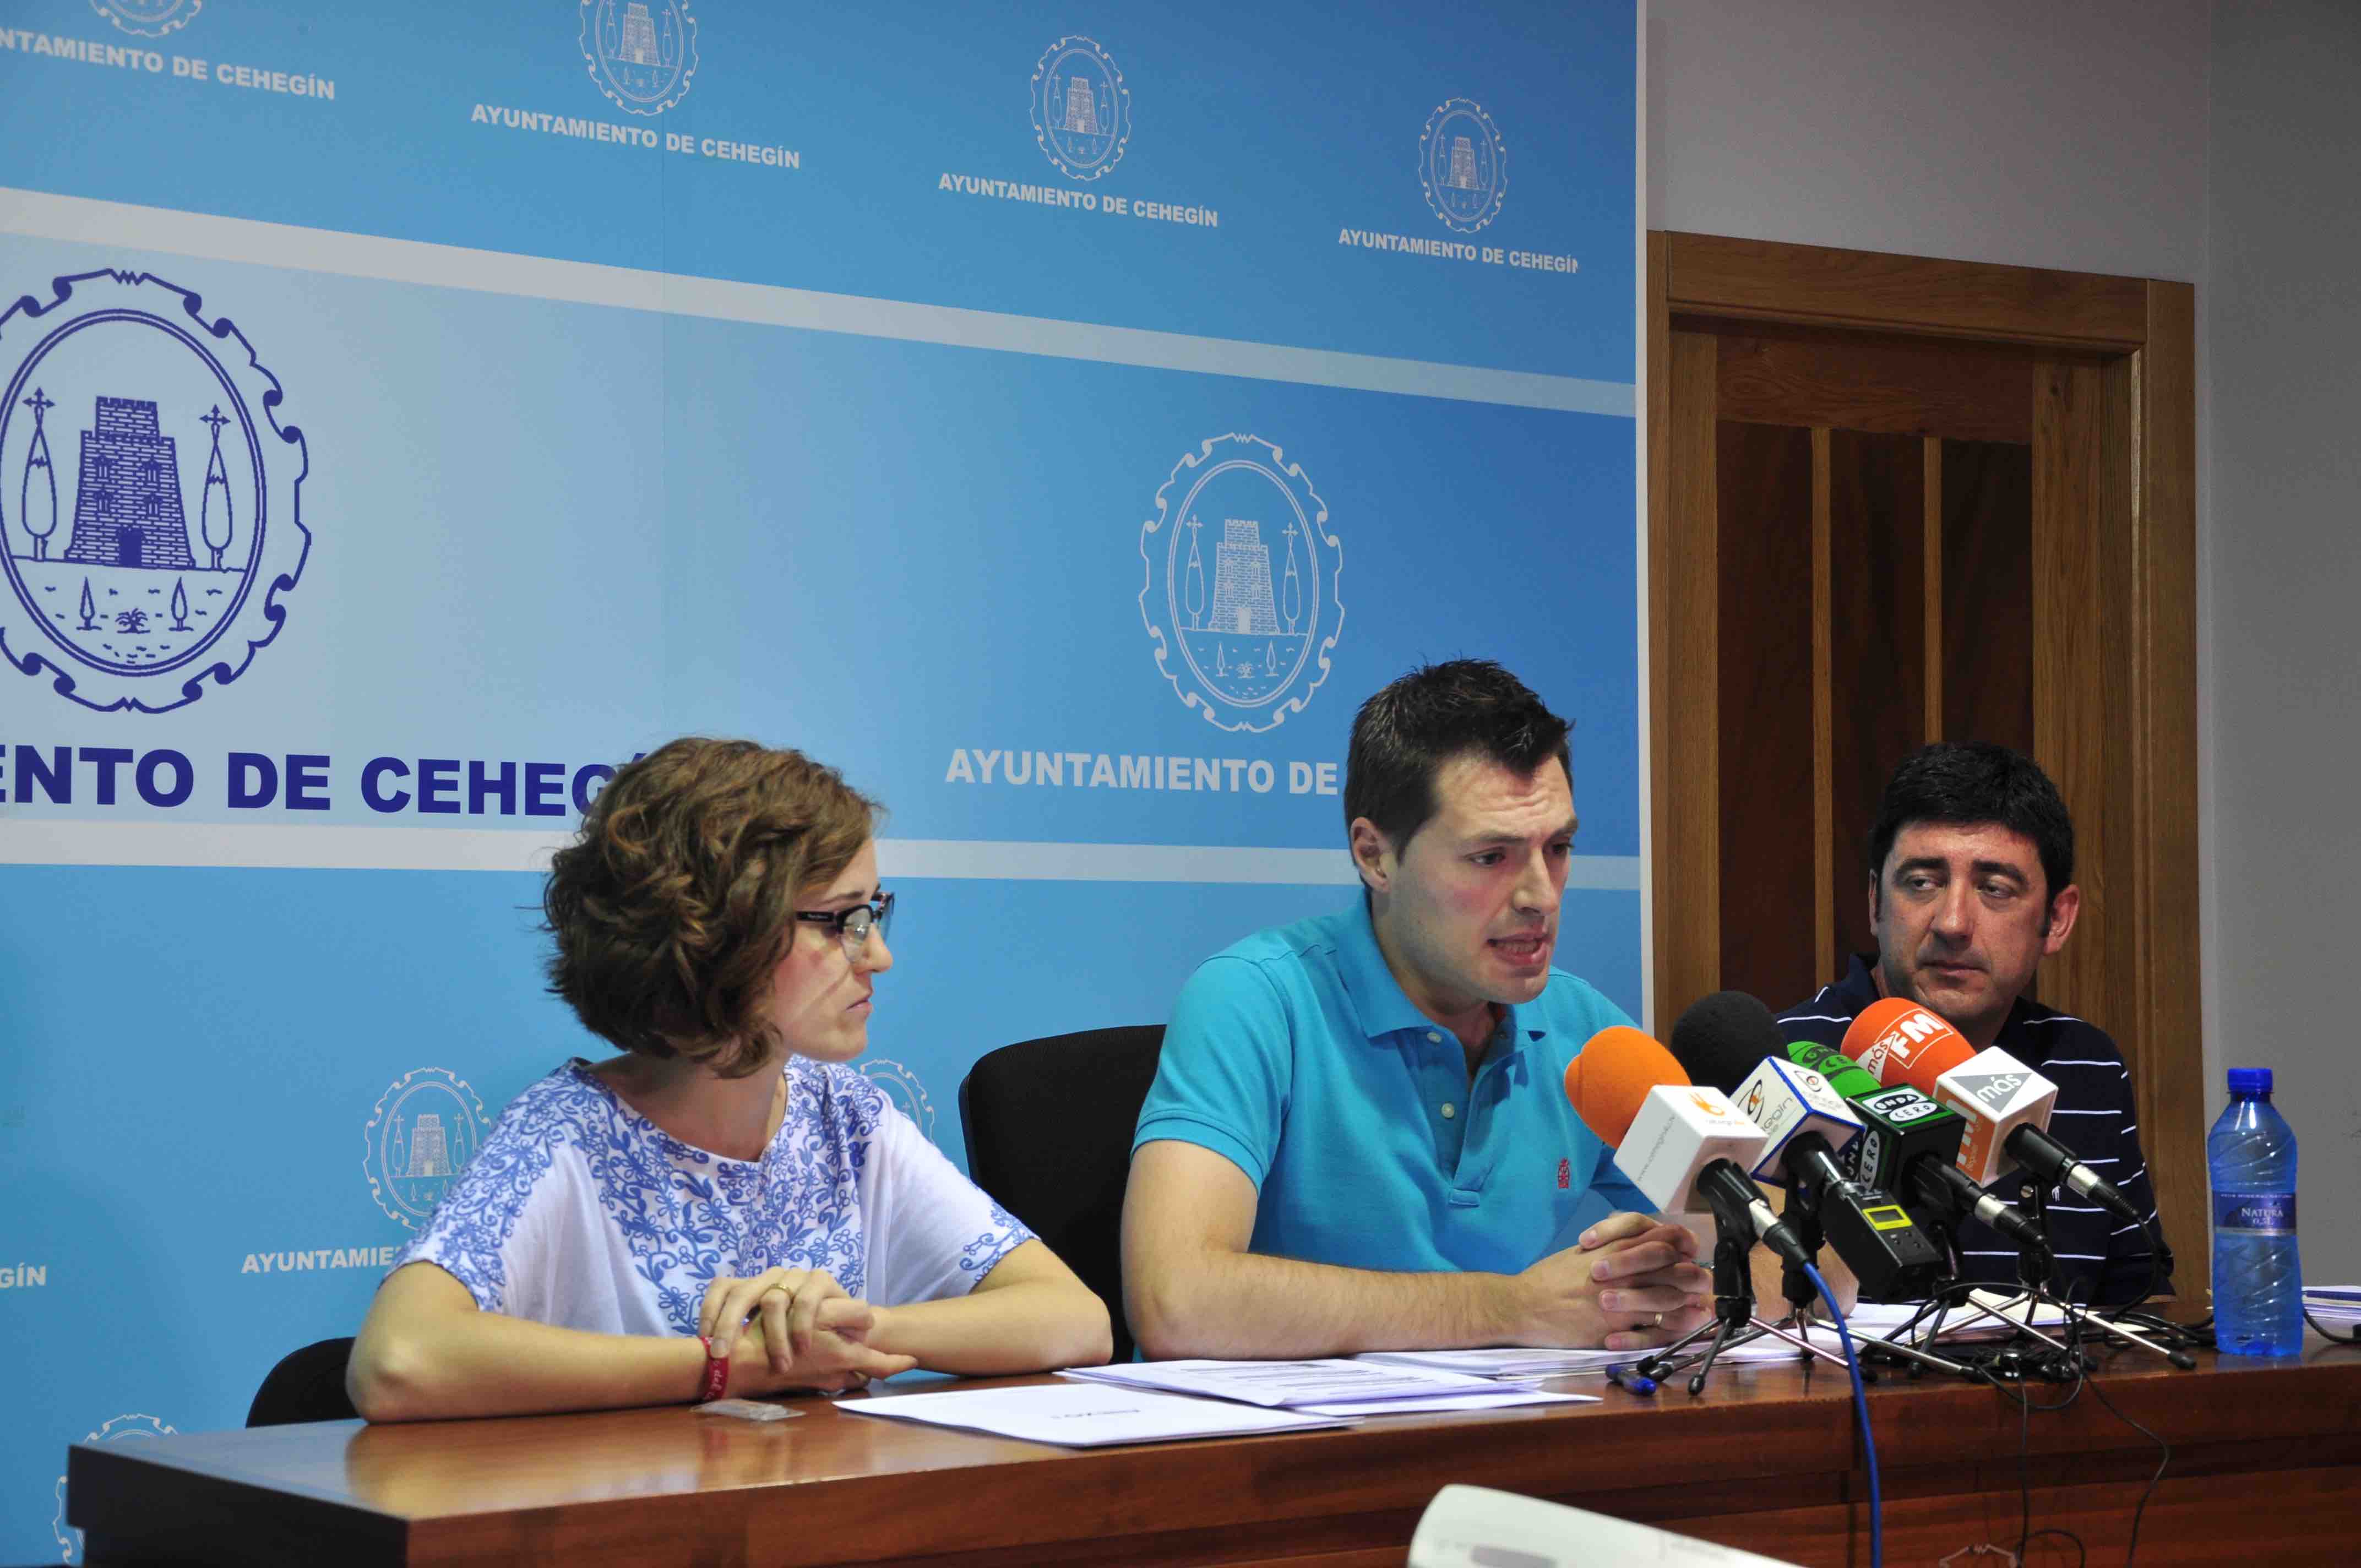 El Ayuntamiento de Cehegín convoca a la ciudadanía el 24 de julio para explicar la situación heredada que califica de "economía de guerra"